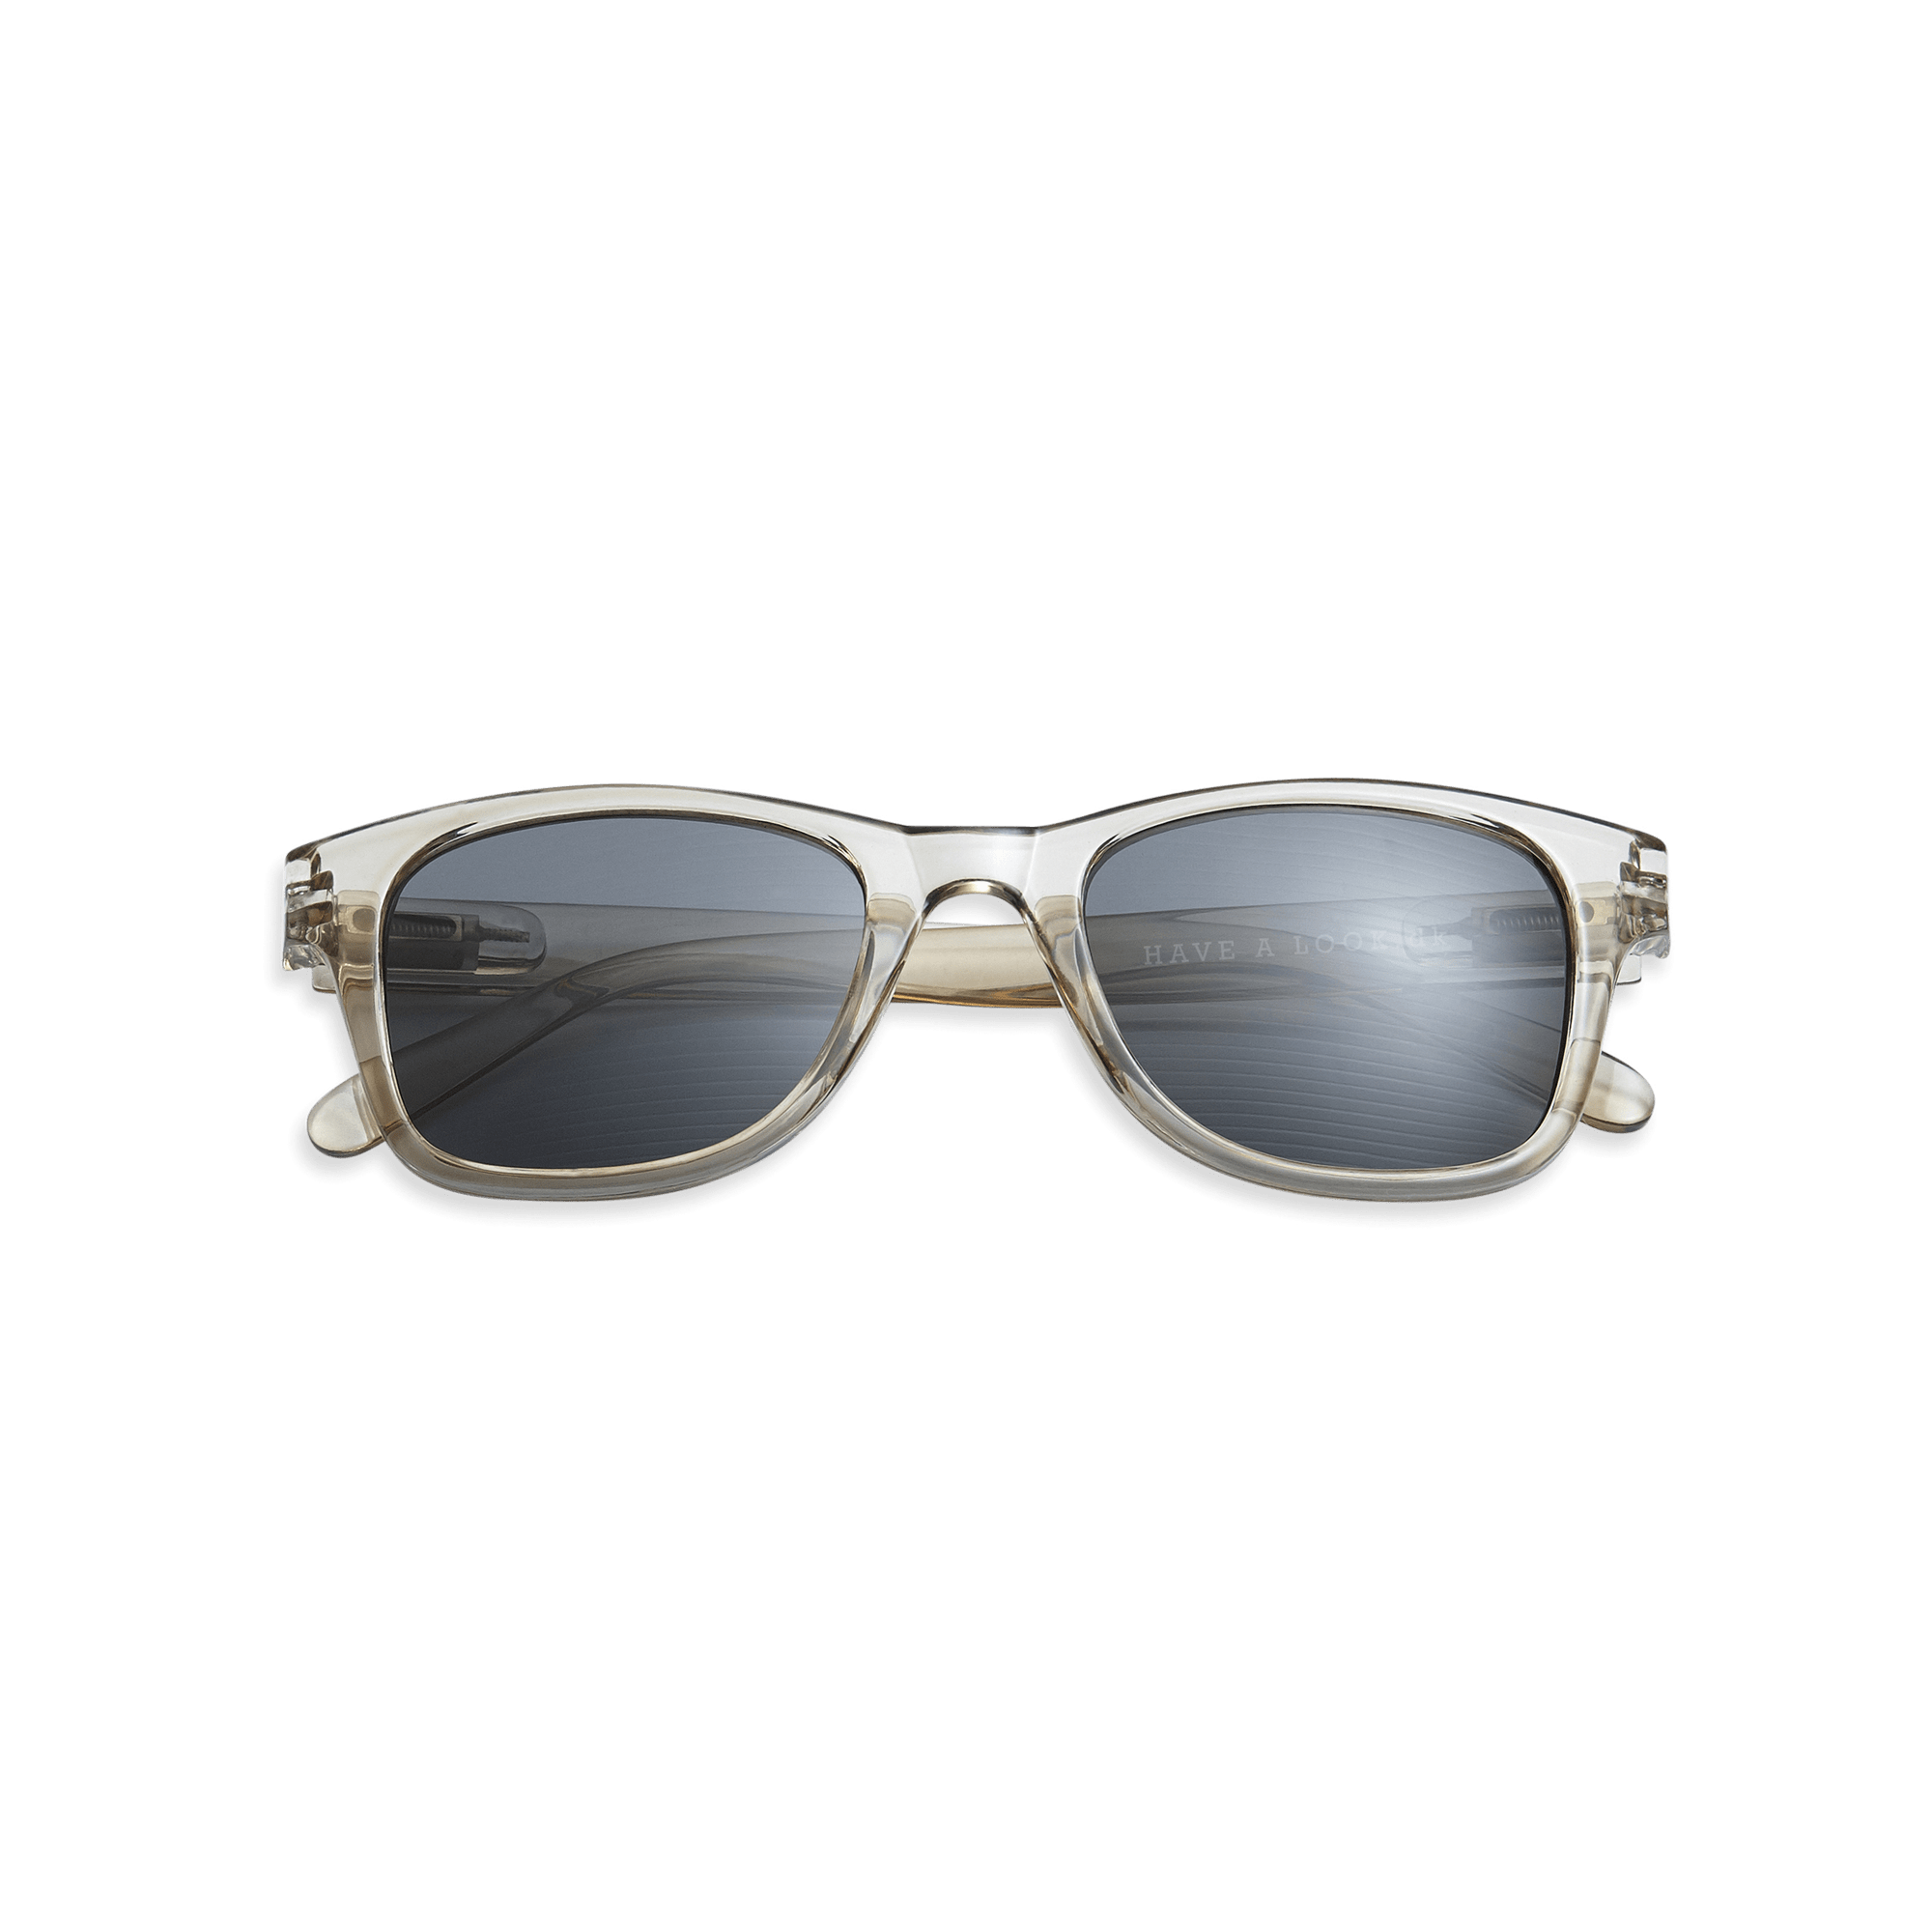 Minus-solbriller Type B - olive